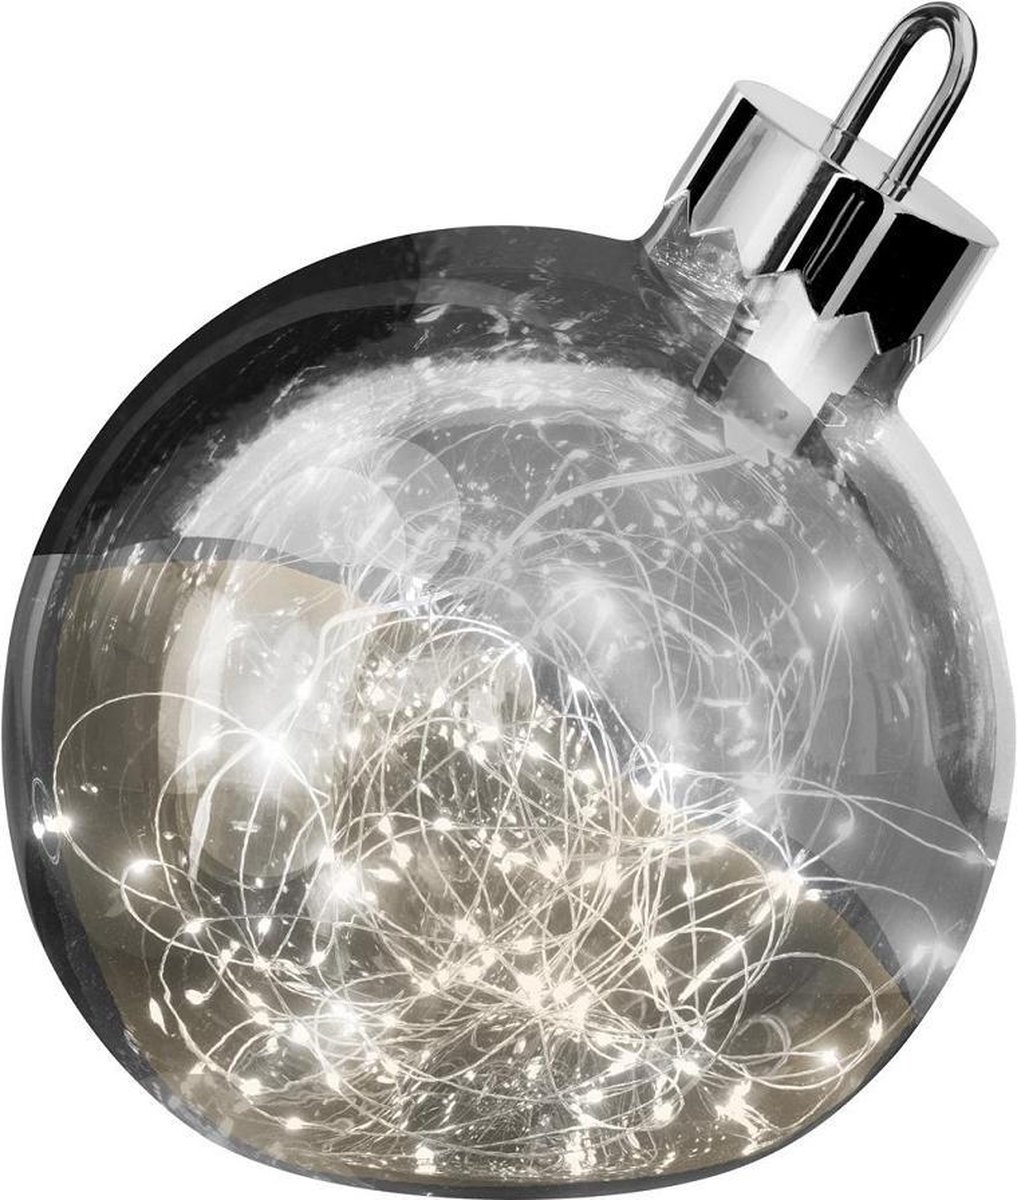 s.luce Orb Lampe décorative LED Boule en verre Ornement de Noël » Ø 20cm,  Fumée